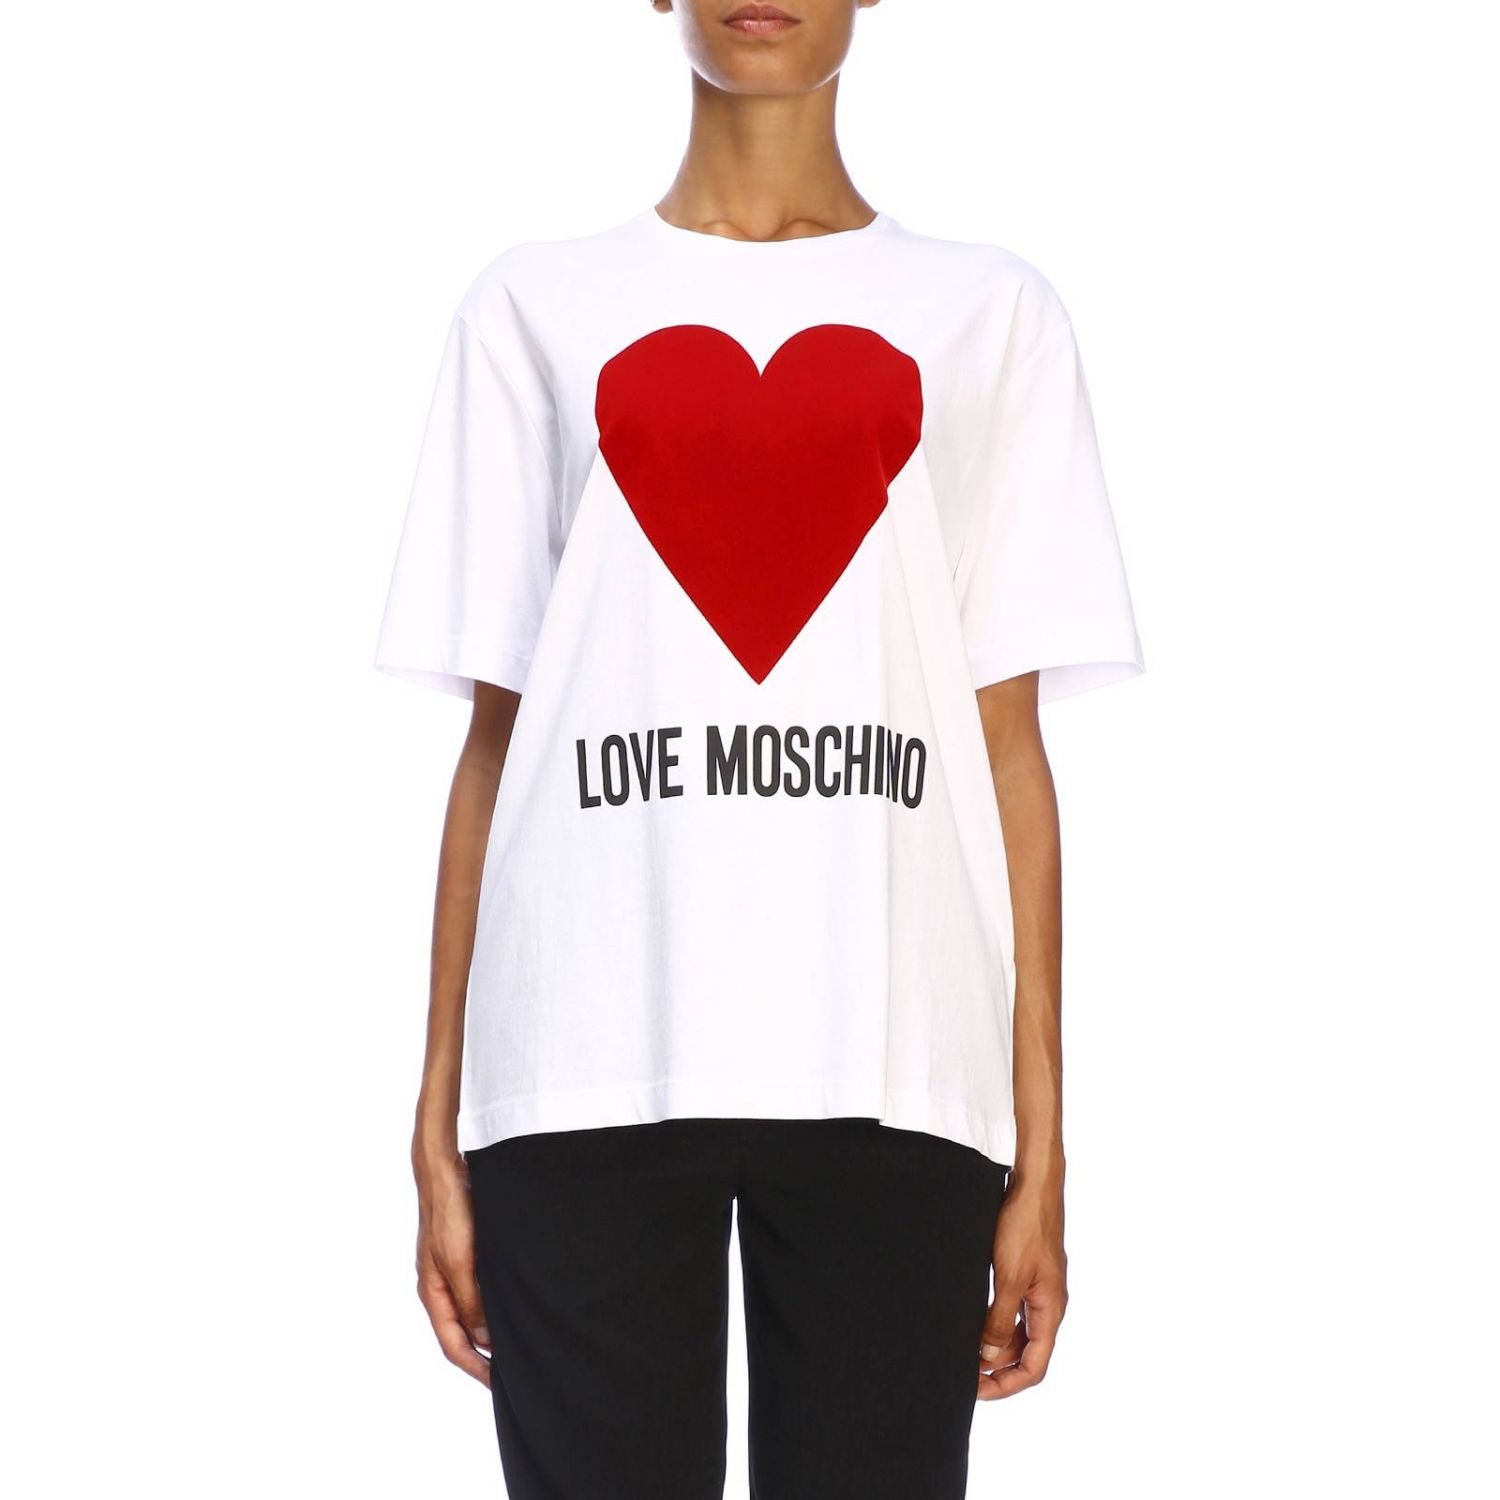 moschino heart t shirt